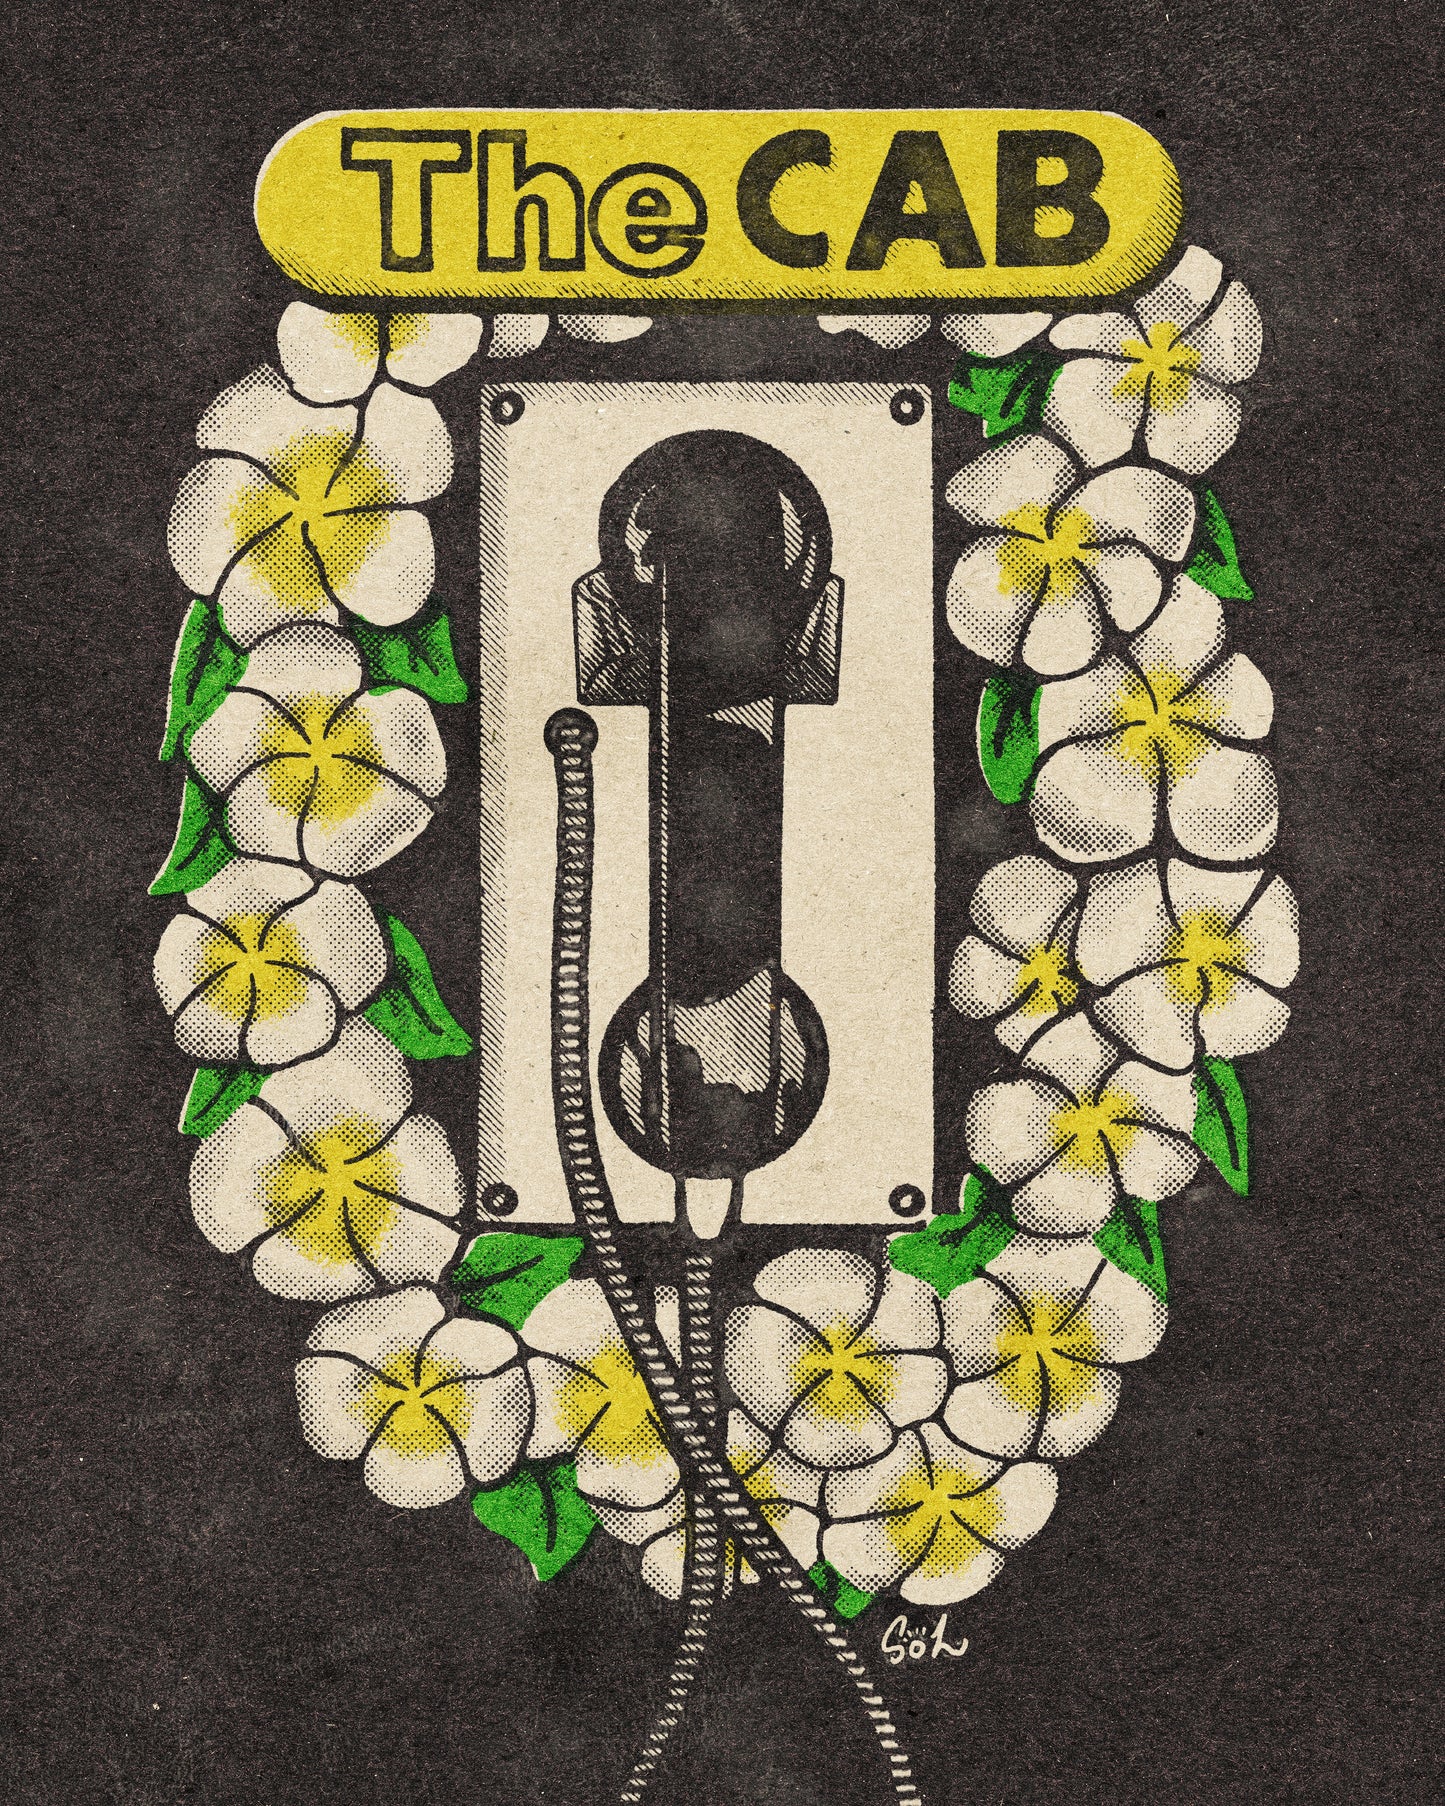 The CAB